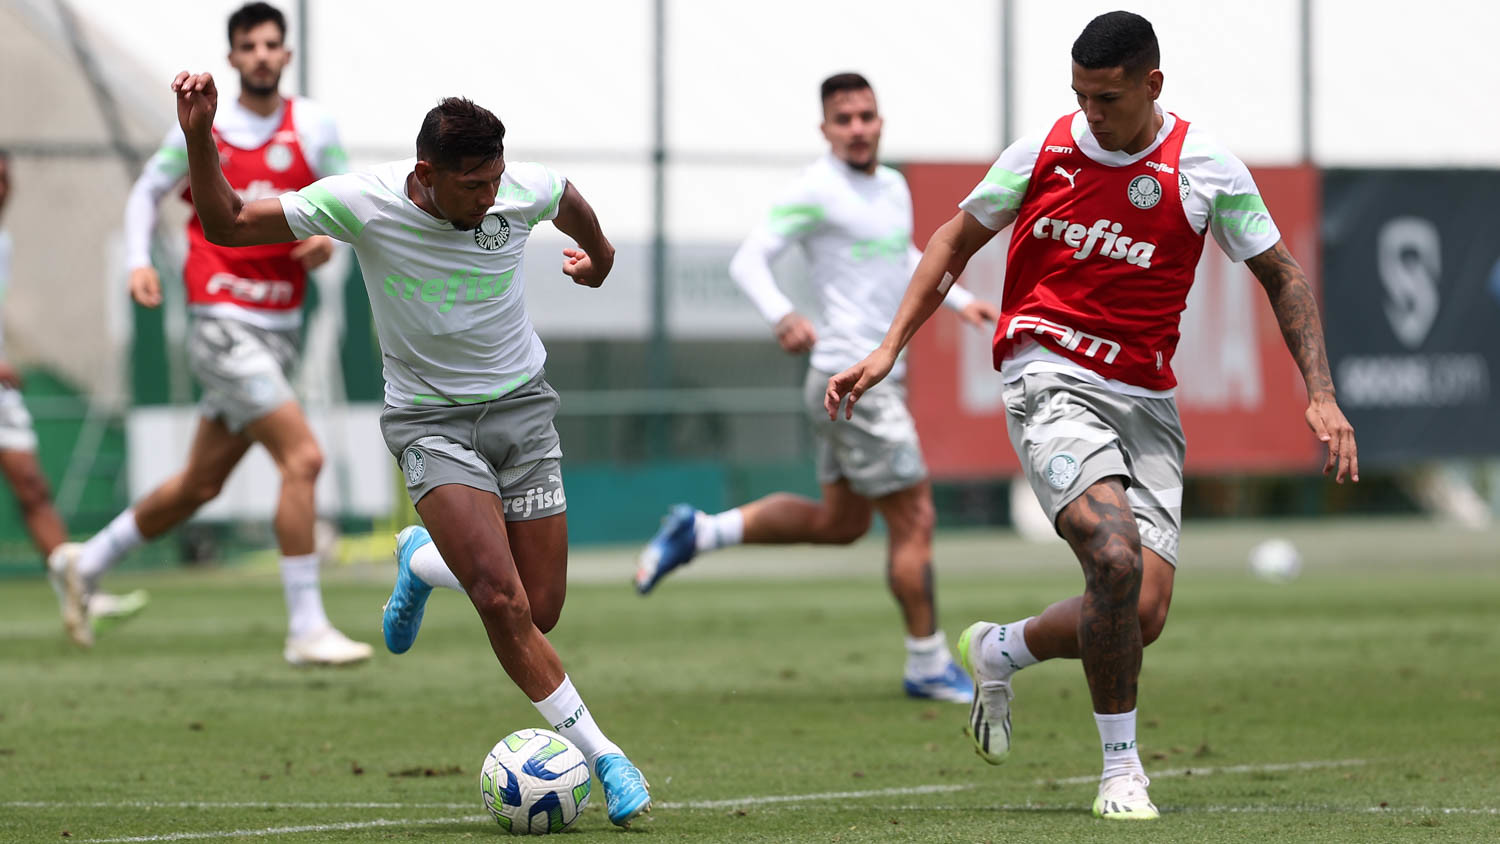 Com sete Crias da Academia substituindo os desfalques, Palmeiras treina visando a próxima partida. (Foto: Cesar Greco/Palmeiras)